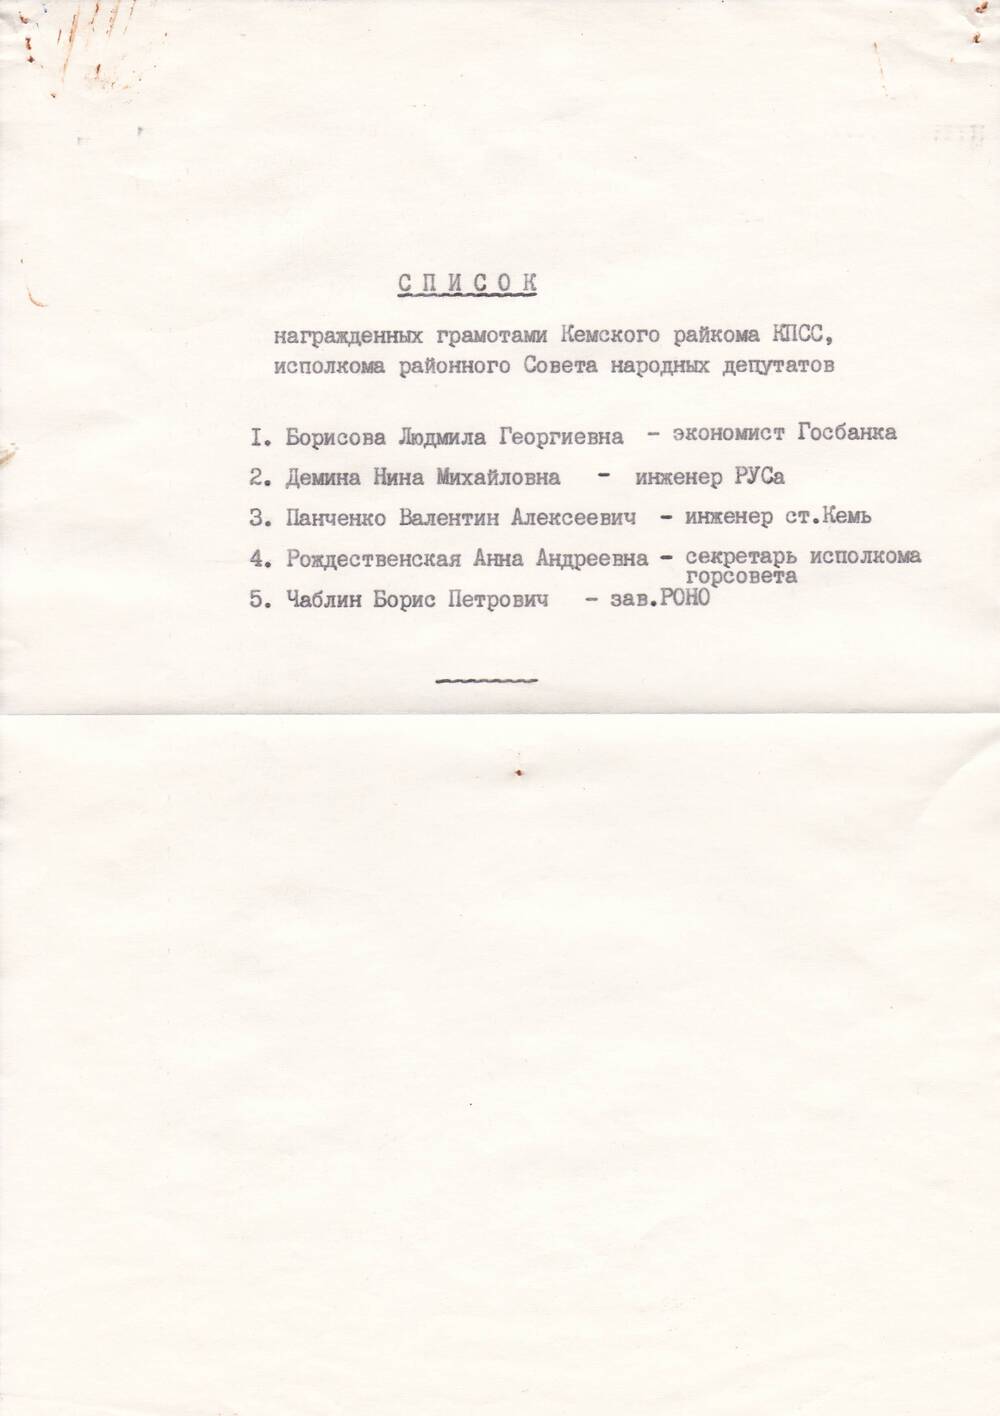 Документ Список награжденных грамотами Кемского райкома КПСС